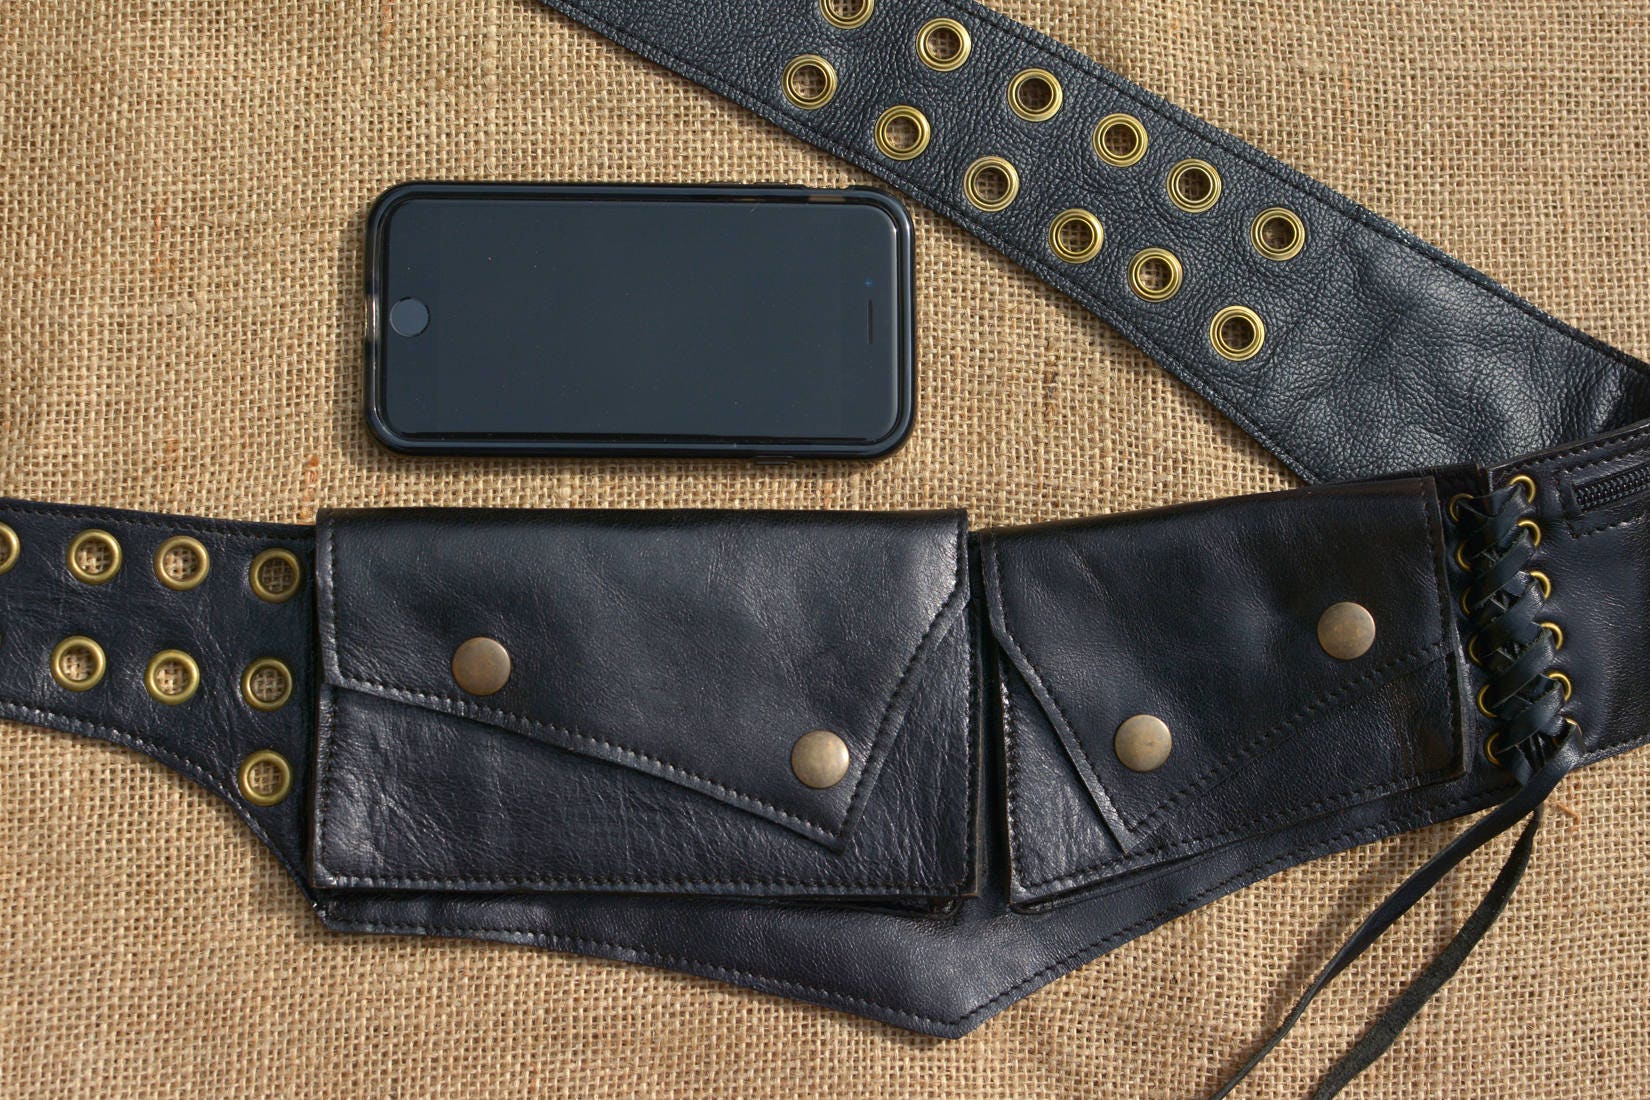 Buy Leather Utility Belt Designer Hip Belt Belt Bag Pocket Online